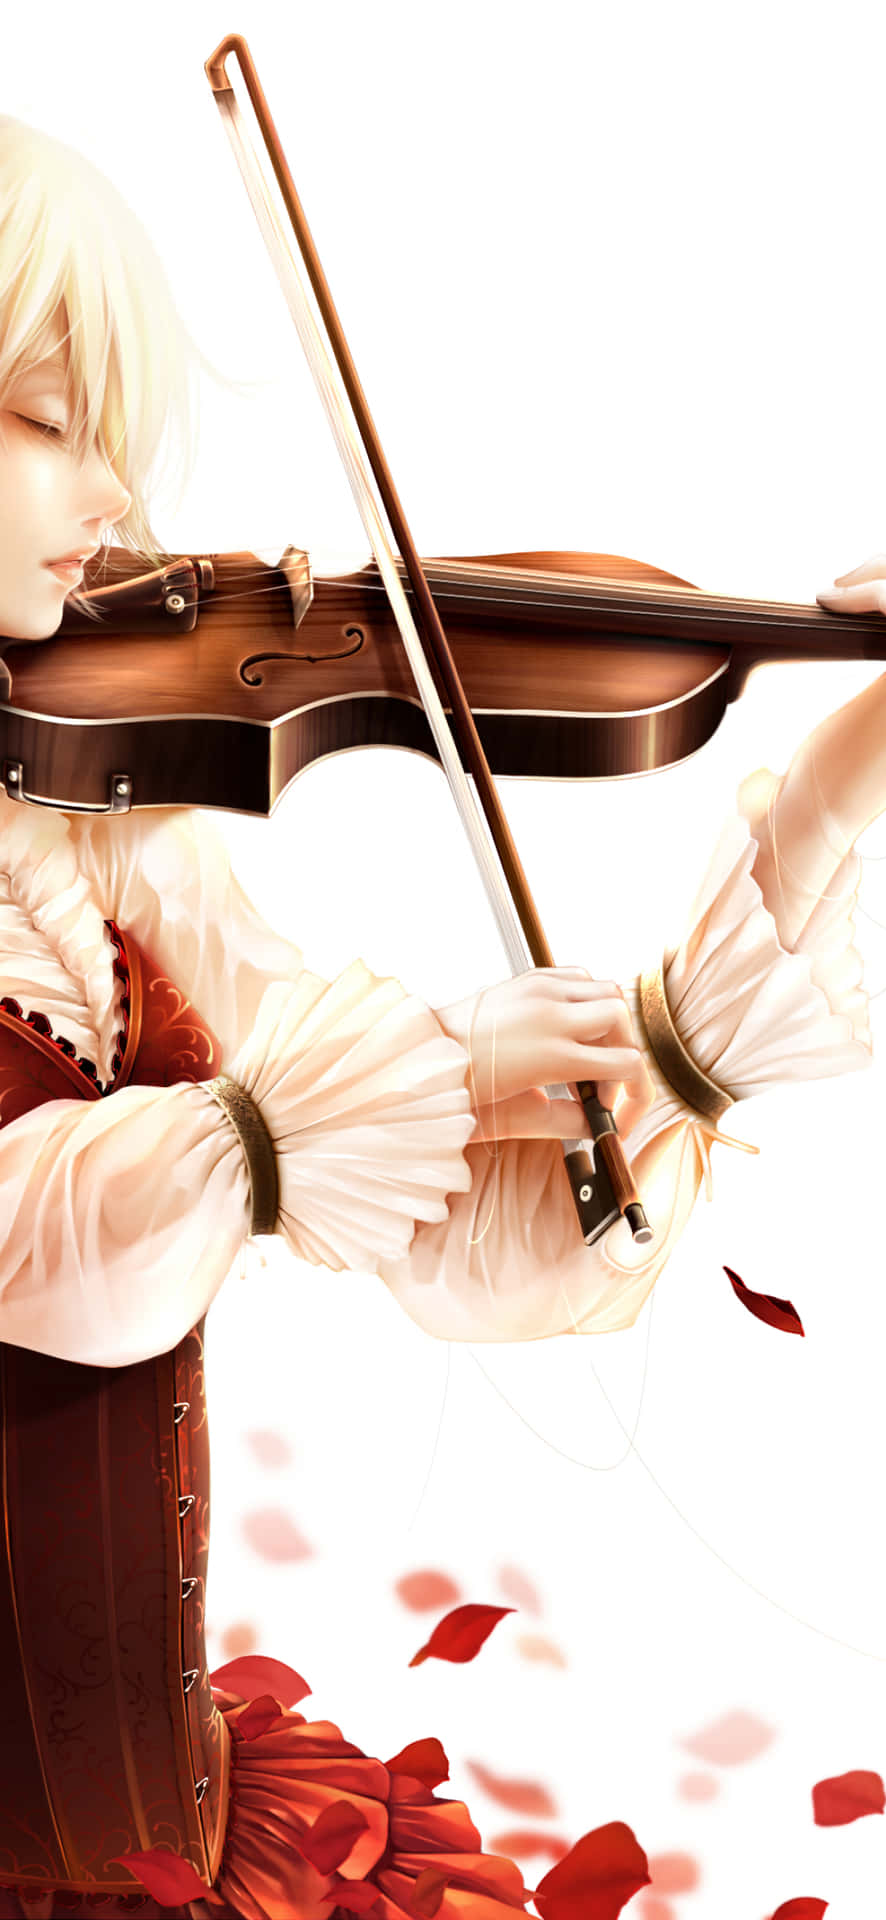 Anime spiller fiol med rosebillede.